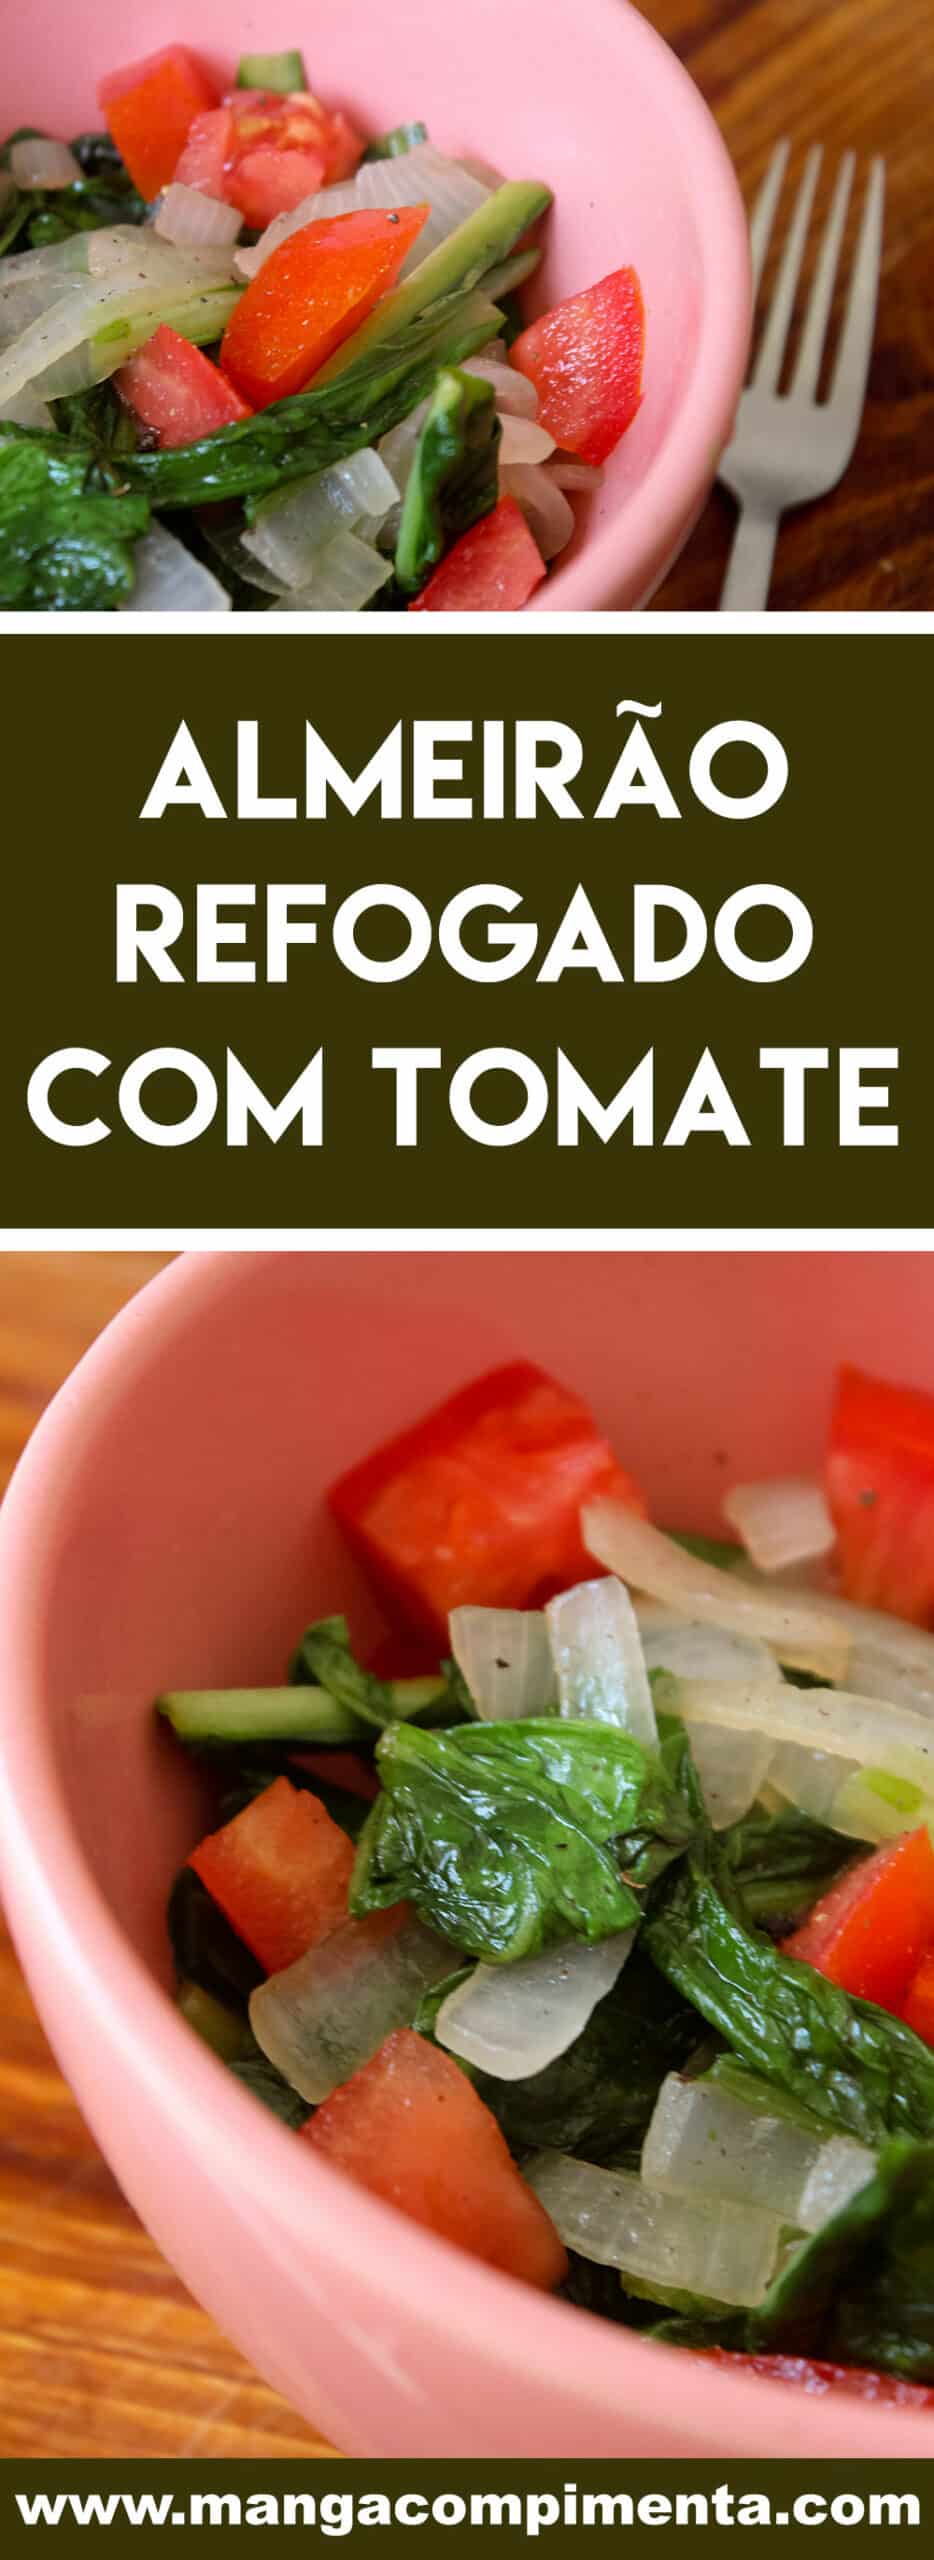 Receita de Almeirão refogado com Tomate - para um almoço ou jantar nutritivo nesse verão!